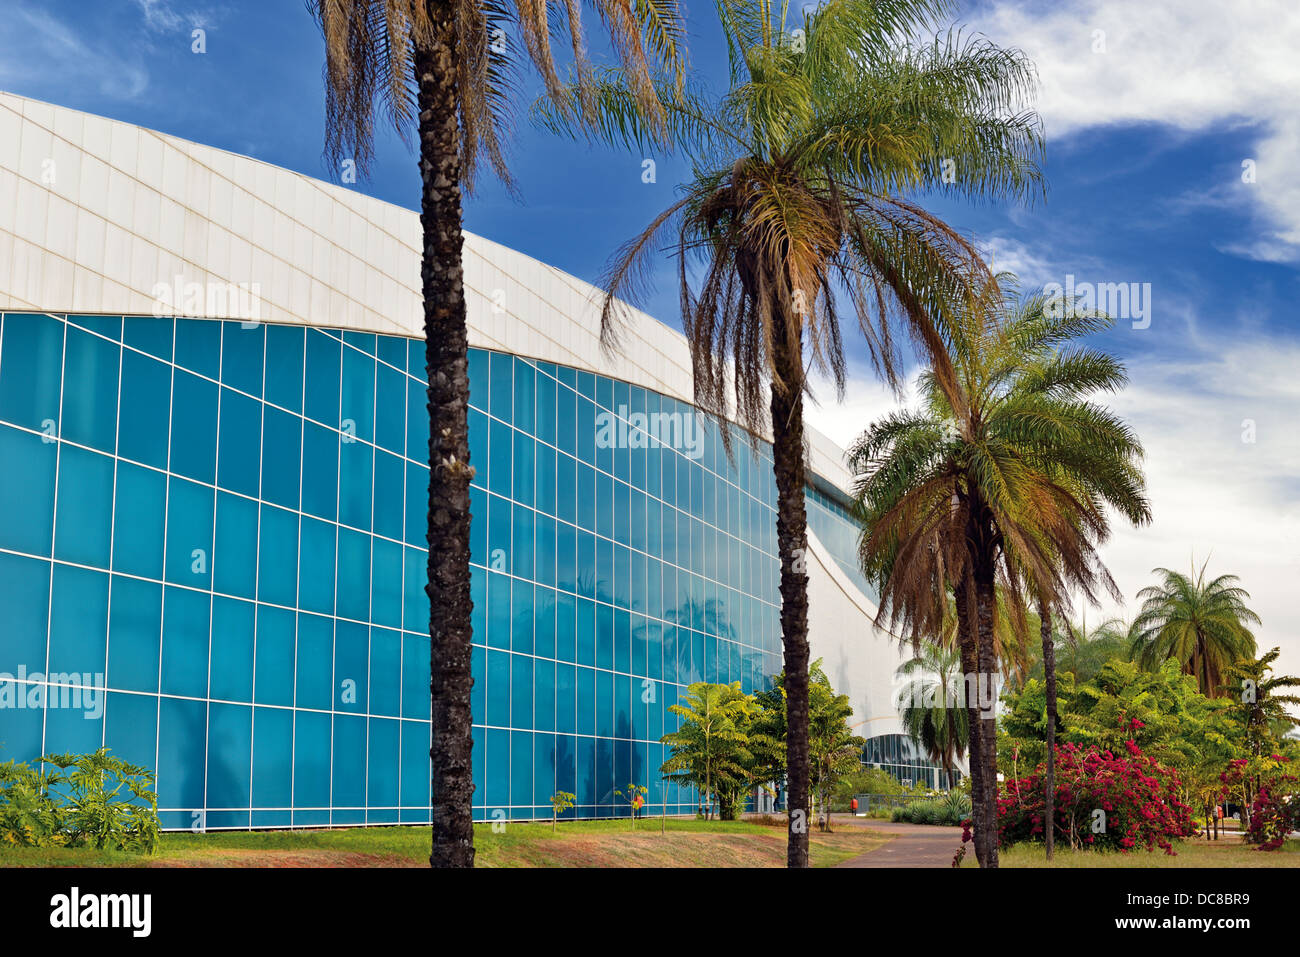 Il Brasile, Brasilia: al di fuori della vista dell'architettura moderna del centro congressi Ulysses Guimaraes Foto Stock